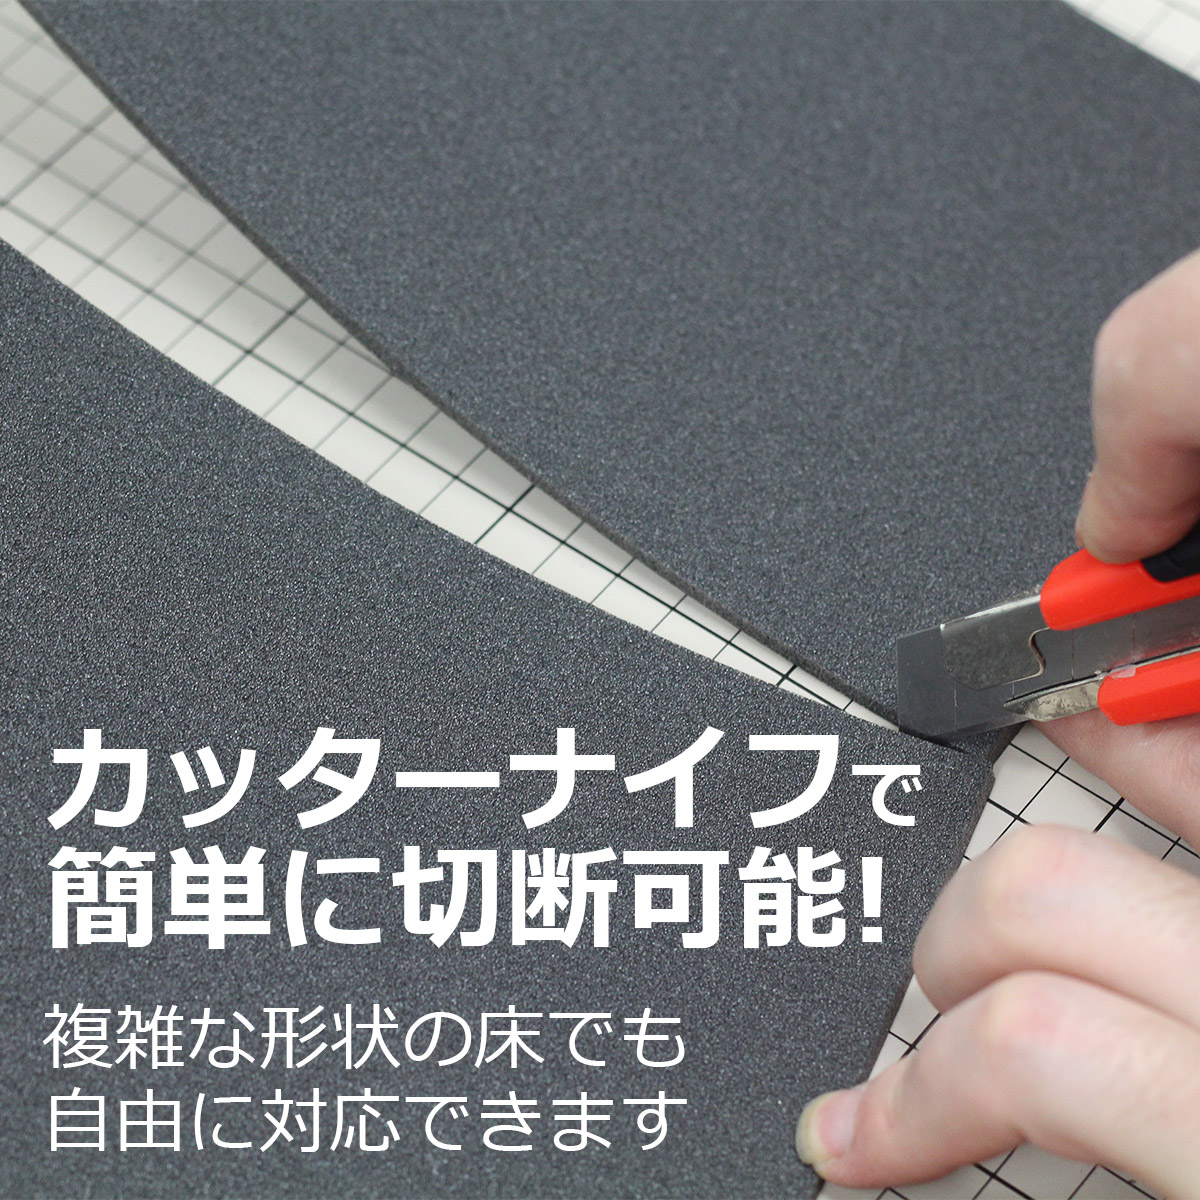 カッターナイフで簡単に切断可能！複雑な形状の床でも自由に対応できます